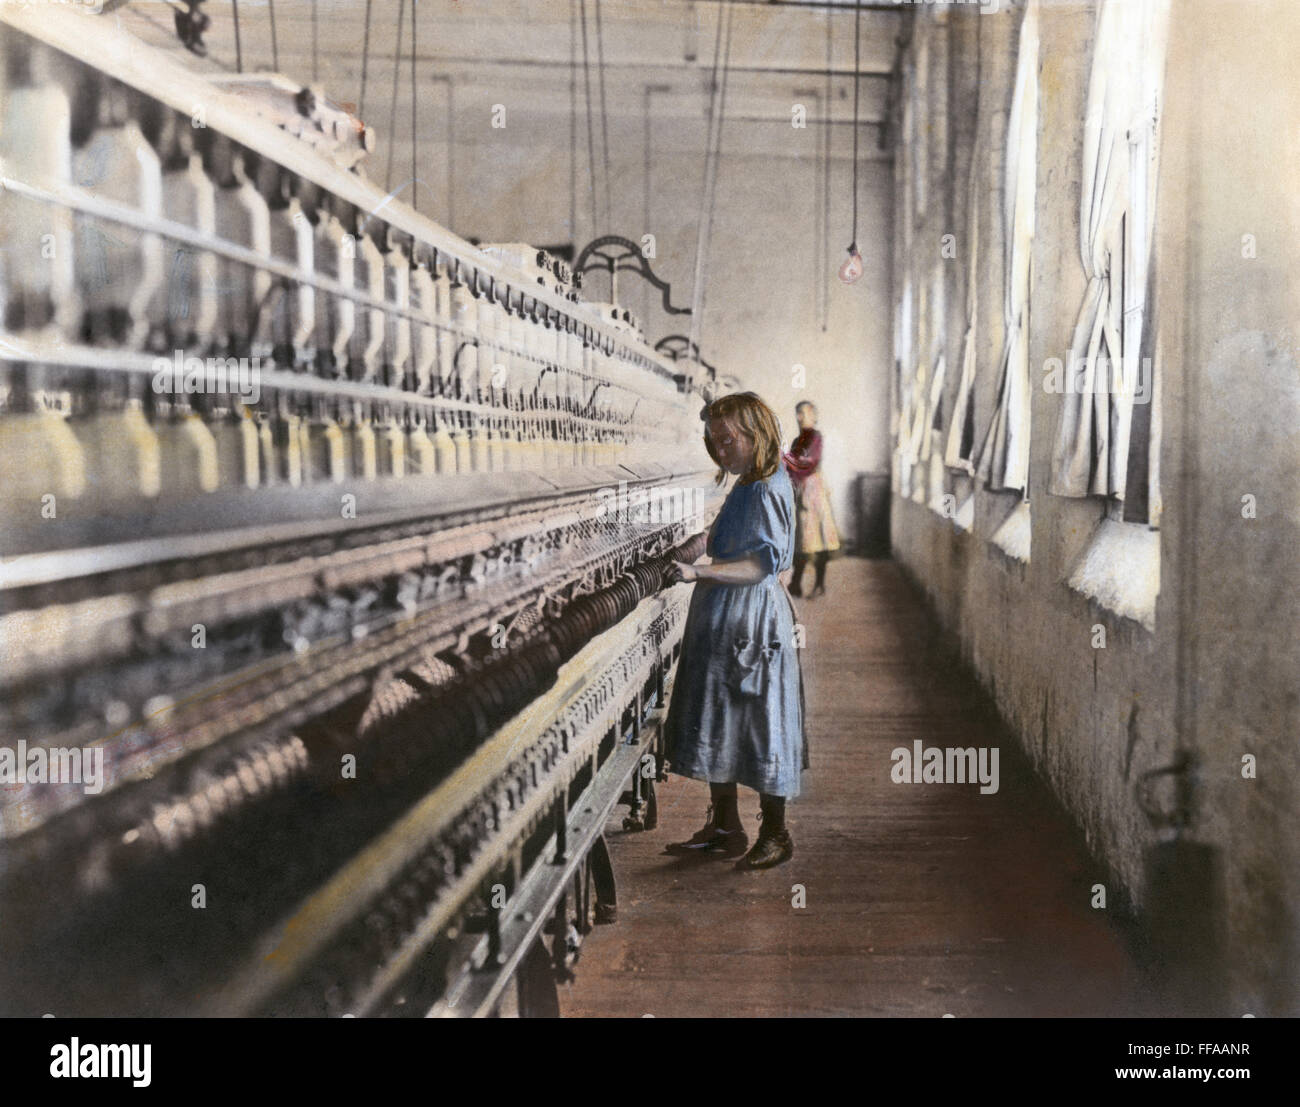 Le travail des enfants, 1908. /NSadie Pfeifer, 48 pouces de haut, l'âge n'est pas connu. Elle est l'un des nombreux enfants au travail dans les usines de coton Lancaster. Huile à une photographie, novembre 1908, par Lewis W. Hine. Banque D'Images